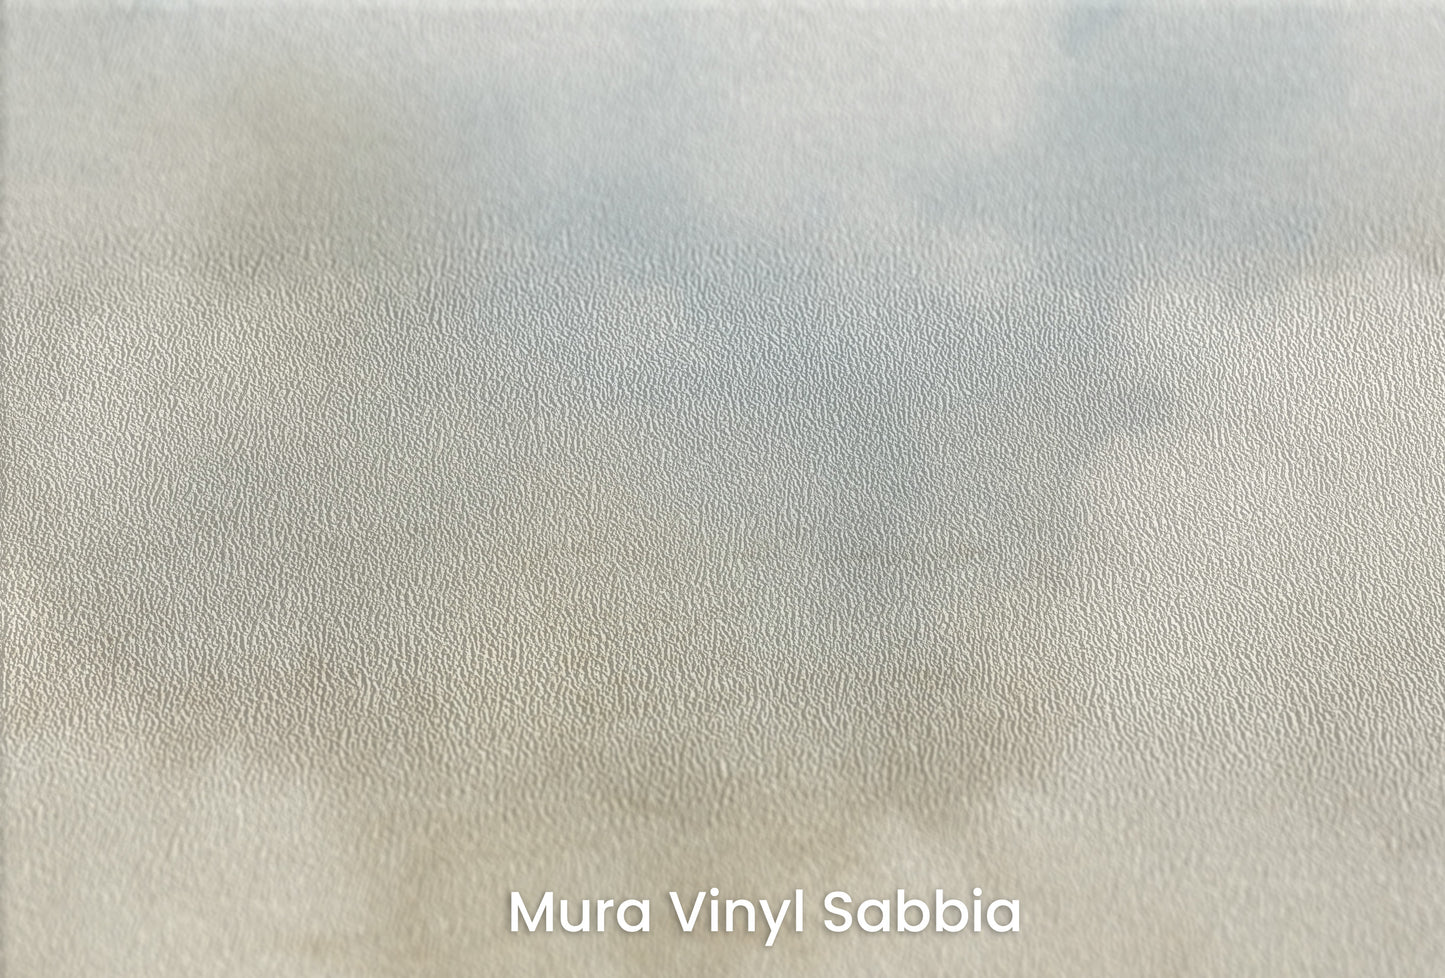 Zbliżenie na artystyczną fototapetę o nazwie SOFT SKIES INFINITY na podłożu Mura Vinyl Sabbia struktura grubego ziarna piasku.